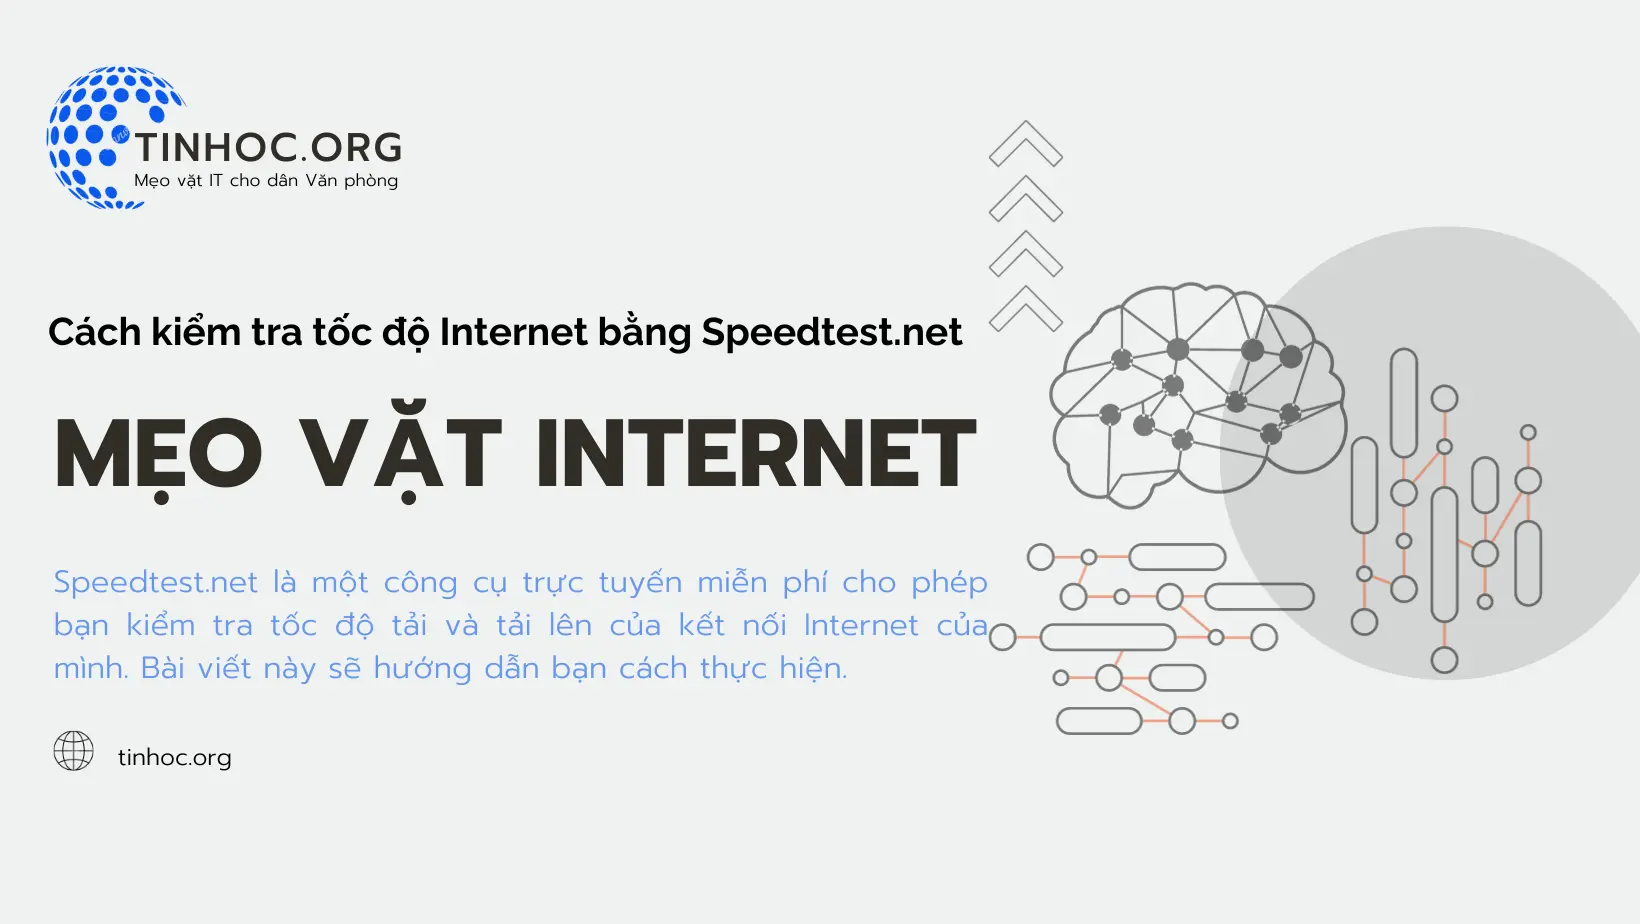 Cách kiểm tra tốc độ Internet bằng SPEEDTEST